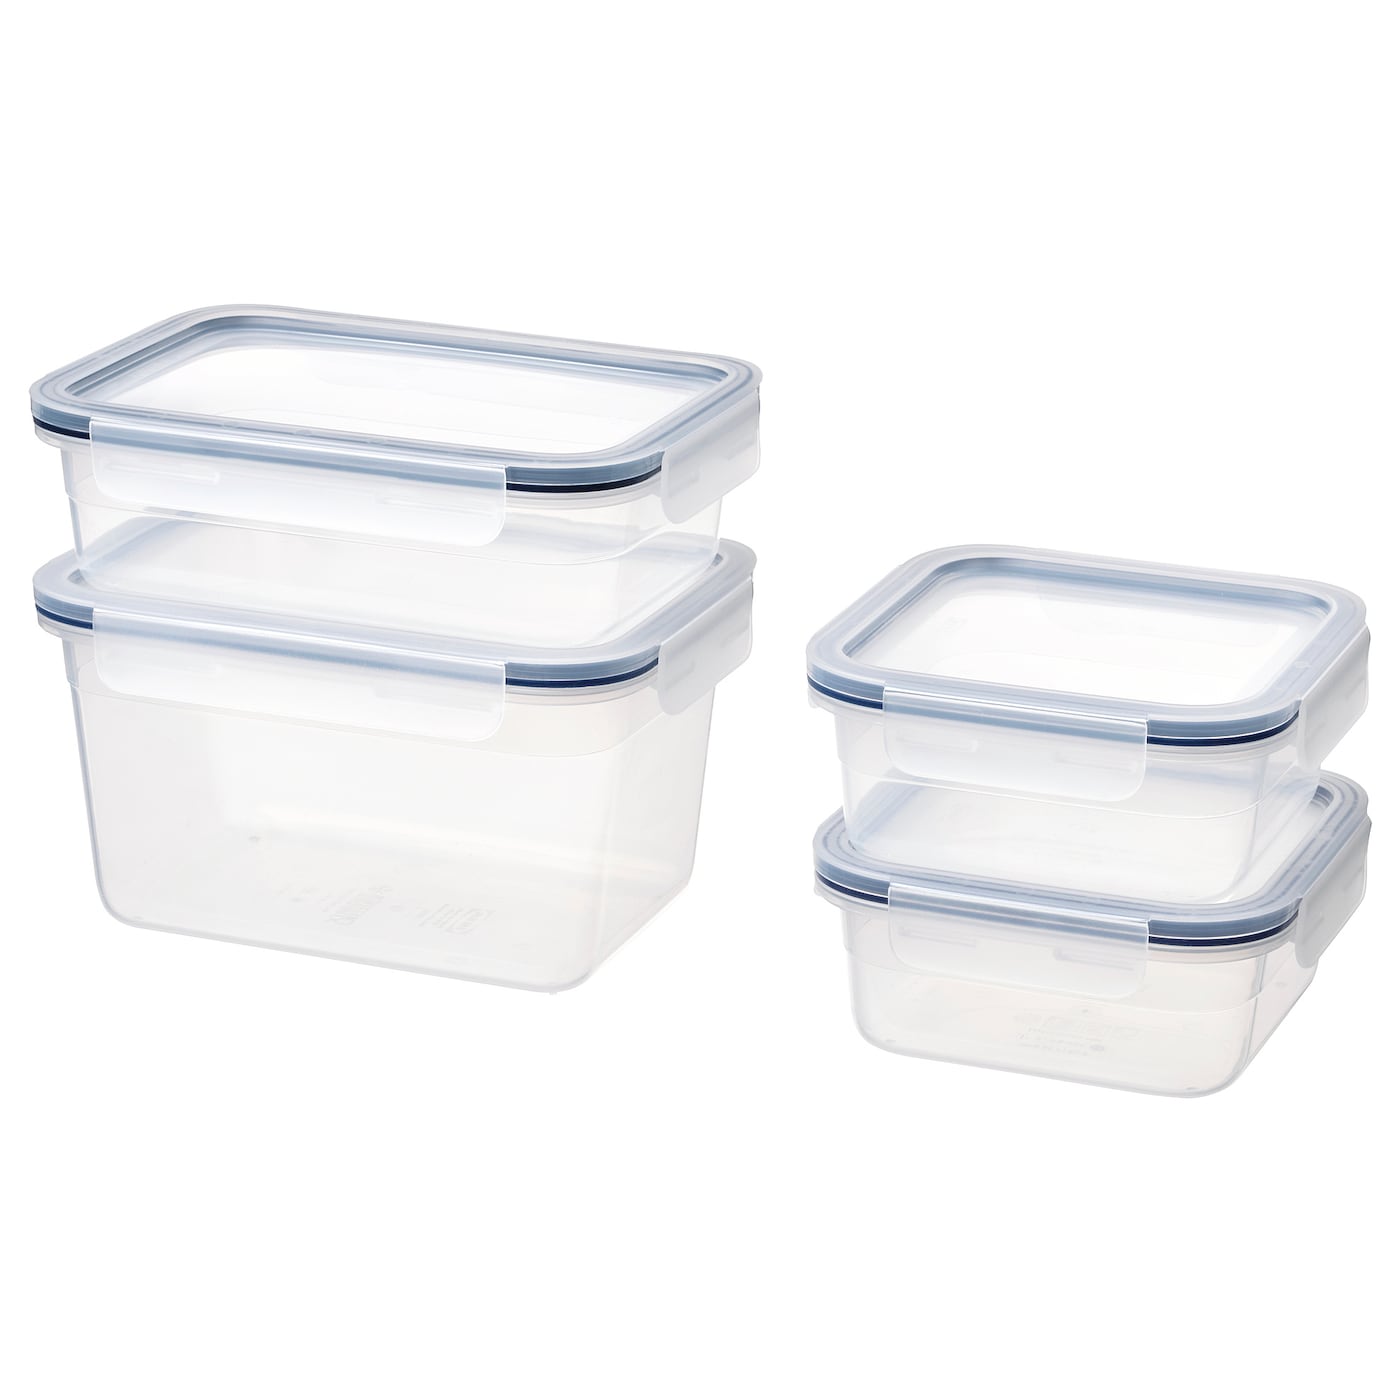 Набор контейнеров для продуктов с крышкой, 4 шт. - IKEA 365+, 1/2/0.75 л, пластик, ИКЕА 365+